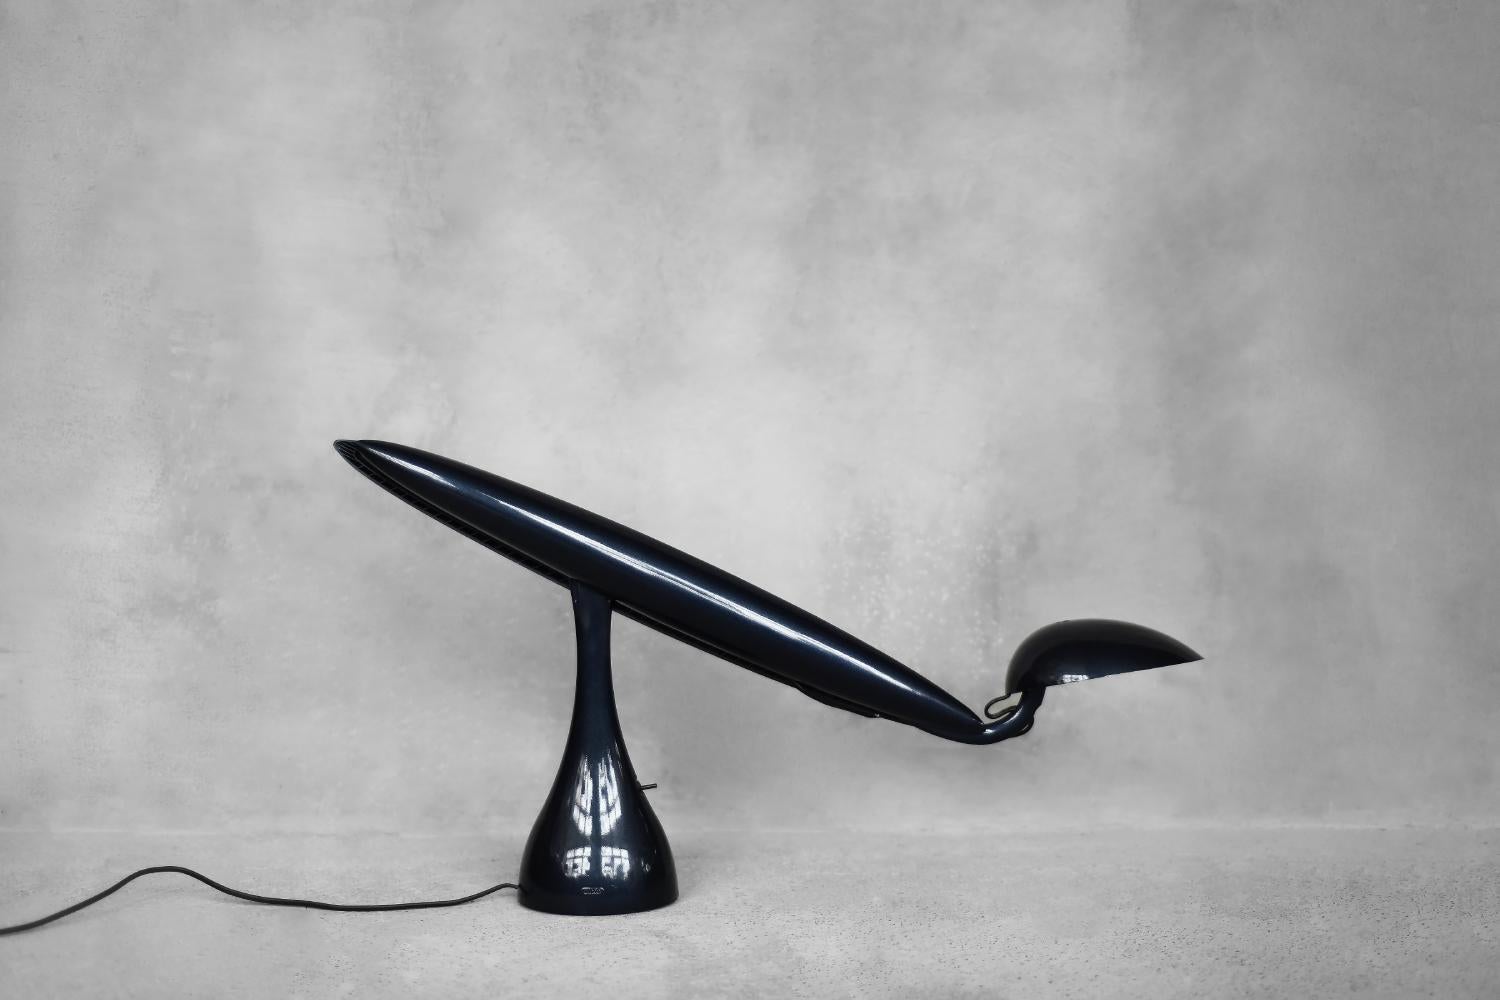 La lampe de bureau orientable Heron a été conçue par Isao Hosoe pour le fabricant norvégien Luxo en 1994. Isao Hosoe a conçu plusieurs modèles de lampes qui s'inspirent d'espèces d'oiseaux. Cependant, c'est le Héron qui est le plus reconnaissable,